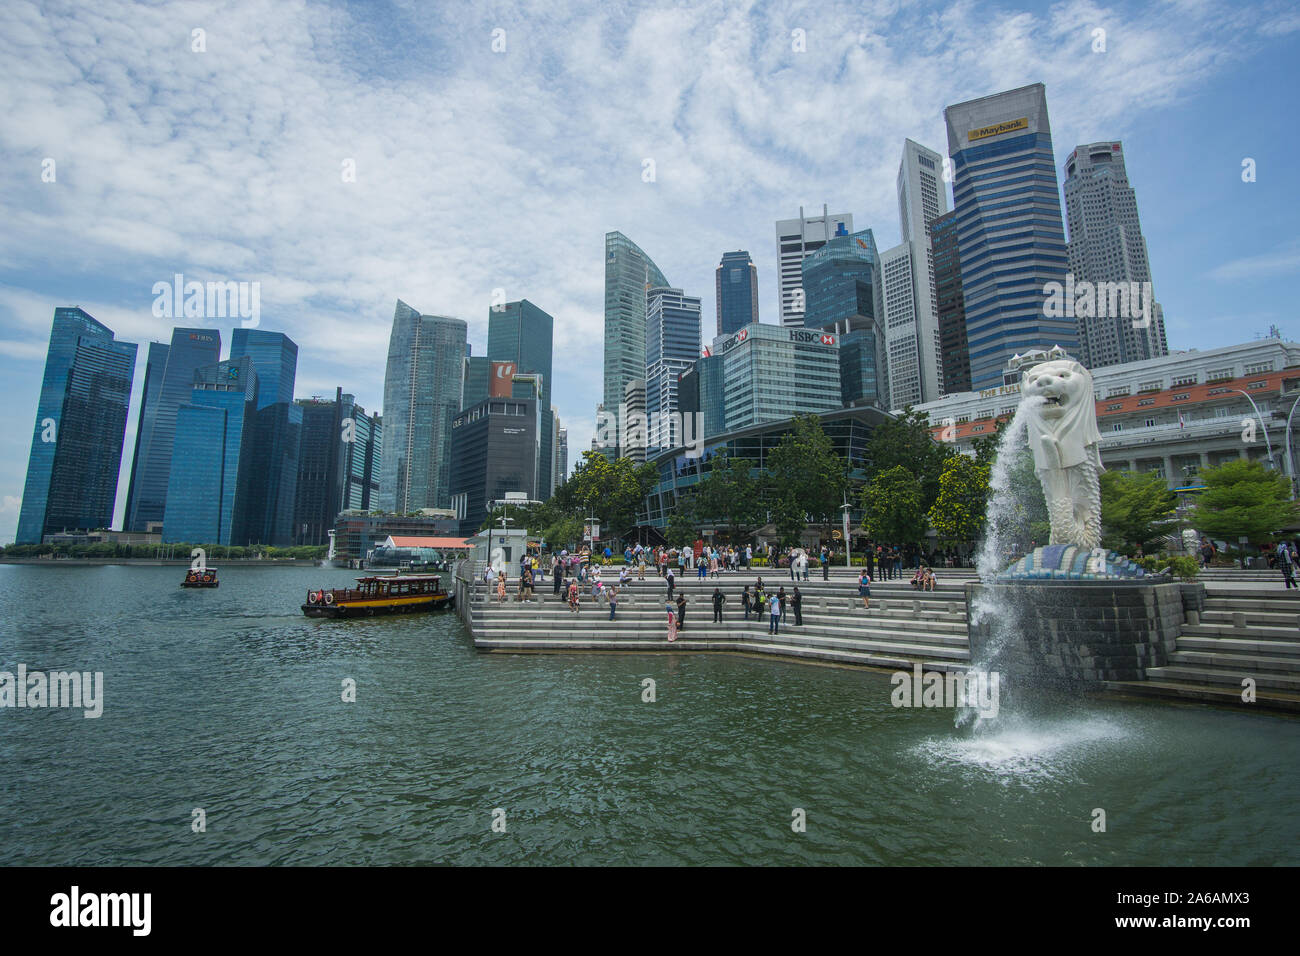 Der Merlion Statue in einem schönen Tag in der Marina Bay in Singapur, die ikonische Ort wird Ihren Kopf mit seinem berühmten Gebäude sprengen. Stockfoto